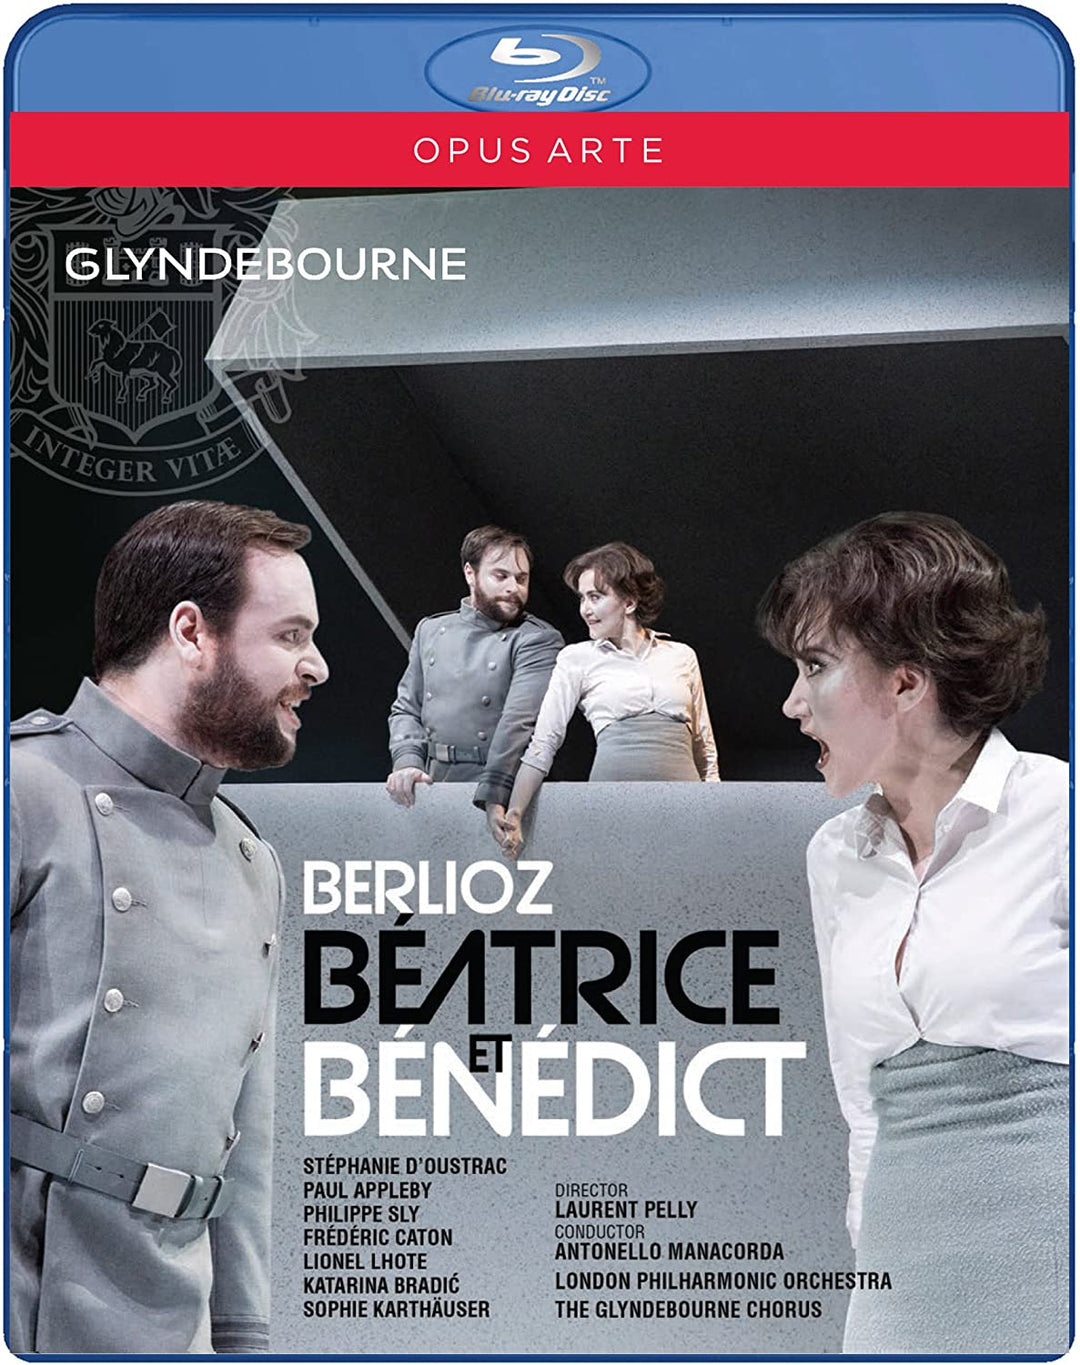 Berlioz: Béatrice et Bénédict [Stéphanie d’Oustrac; Paul Appleby; Philippe Sly; Der Glyndebourne-Chor; Laurent Pelly] [Opus Arte: OABD7219D] [2017] [Blu-ray]